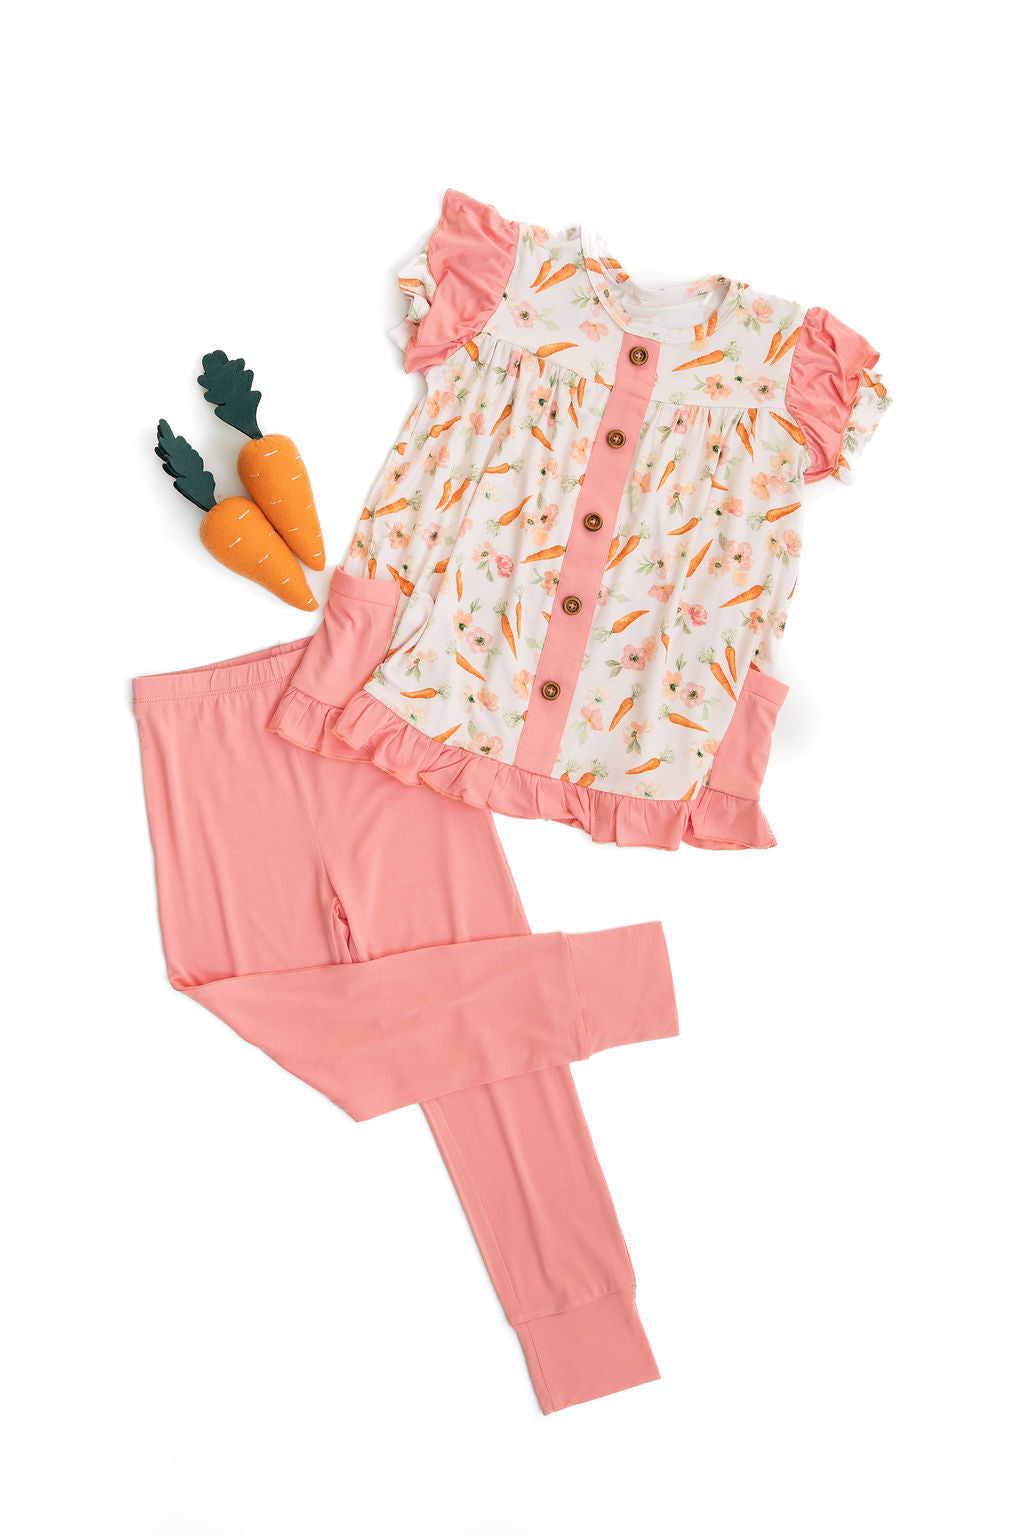 Laree + Co: Lillian's Pink Easter Carrots Short Sleeve Peplum + Legging Set